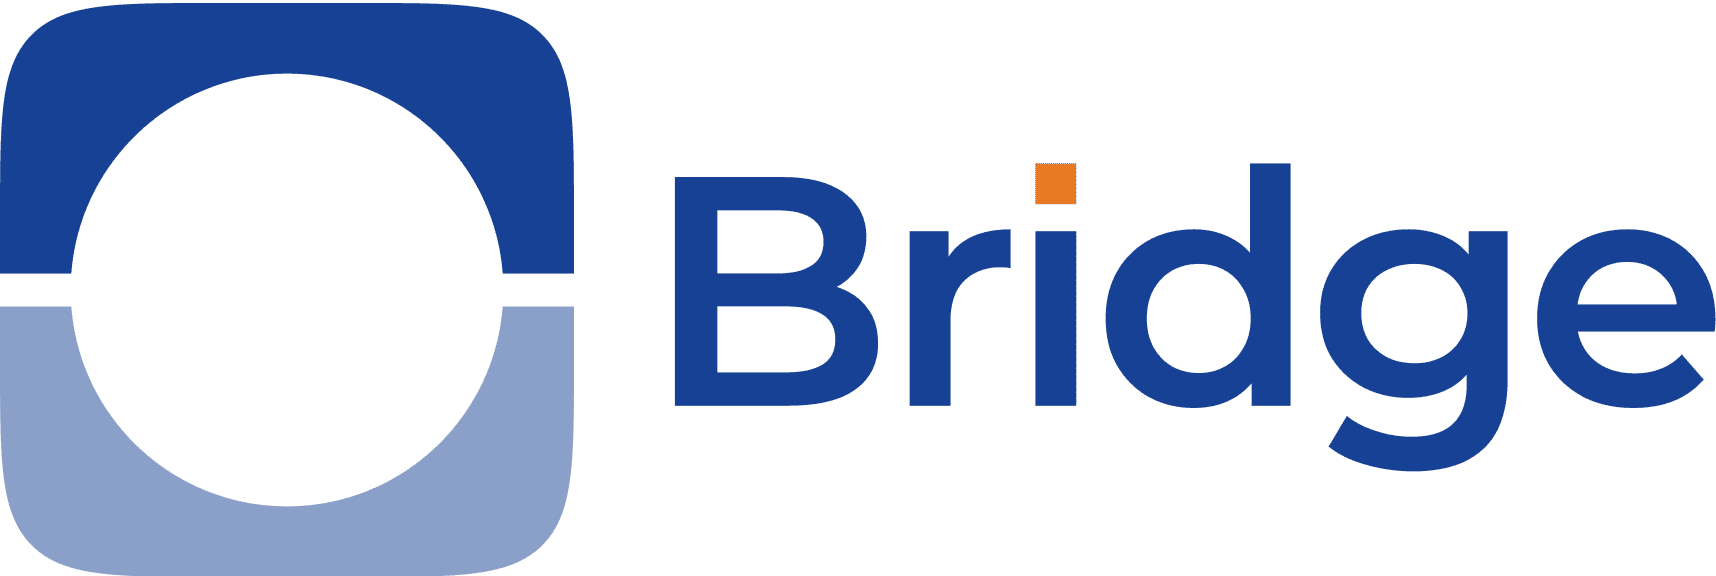 Bridge Fund Services